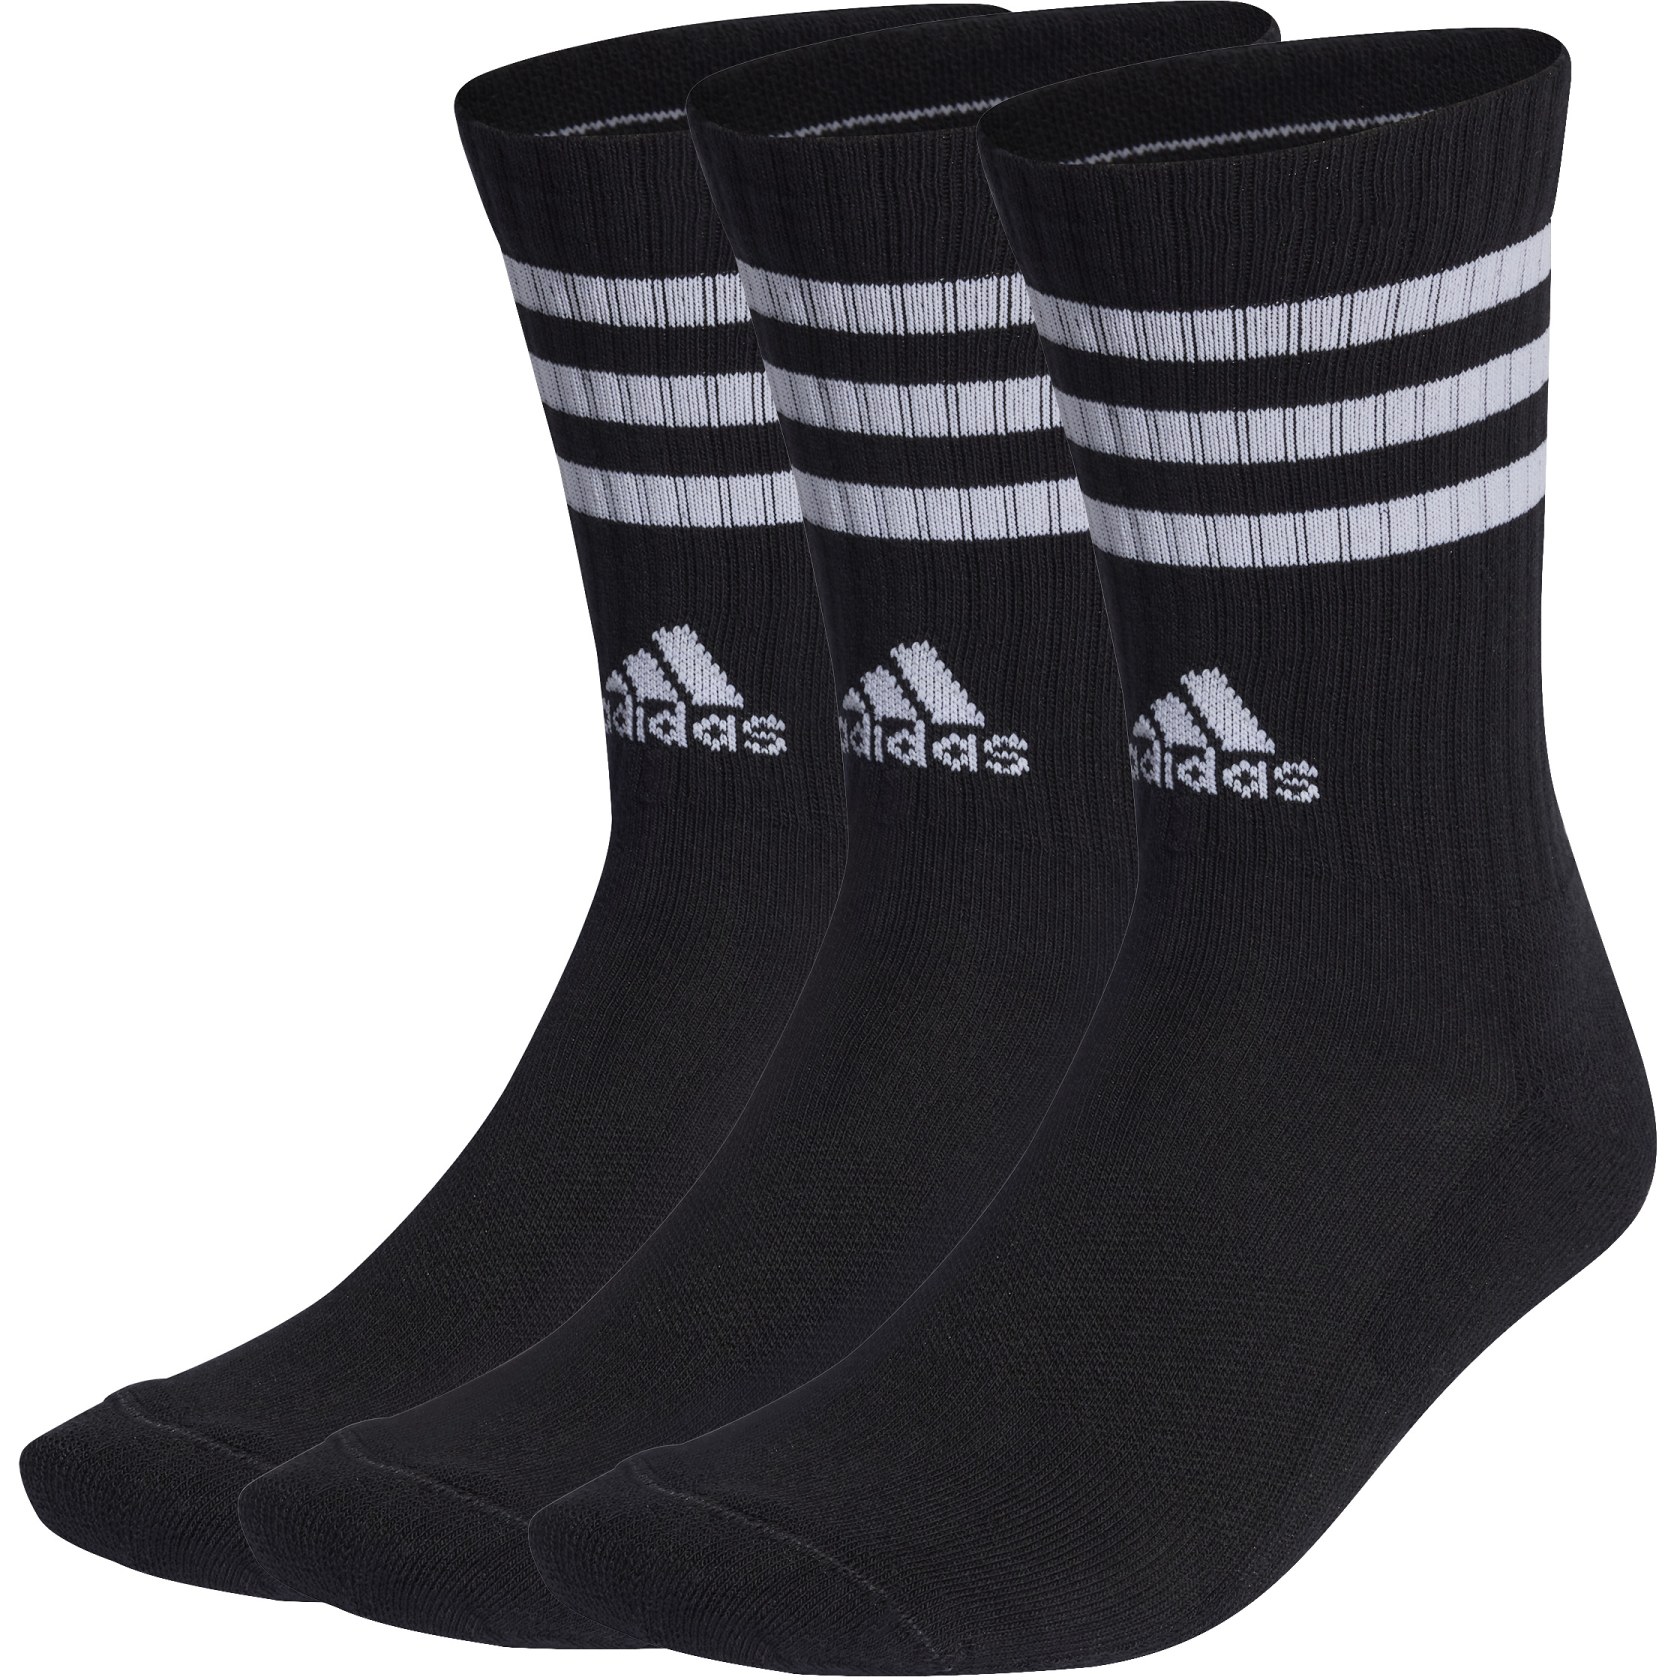 Produktbild von adidas 3-Streifen Cushioned Crew Socken - 3 Paar - schwarz/weiß IC1321